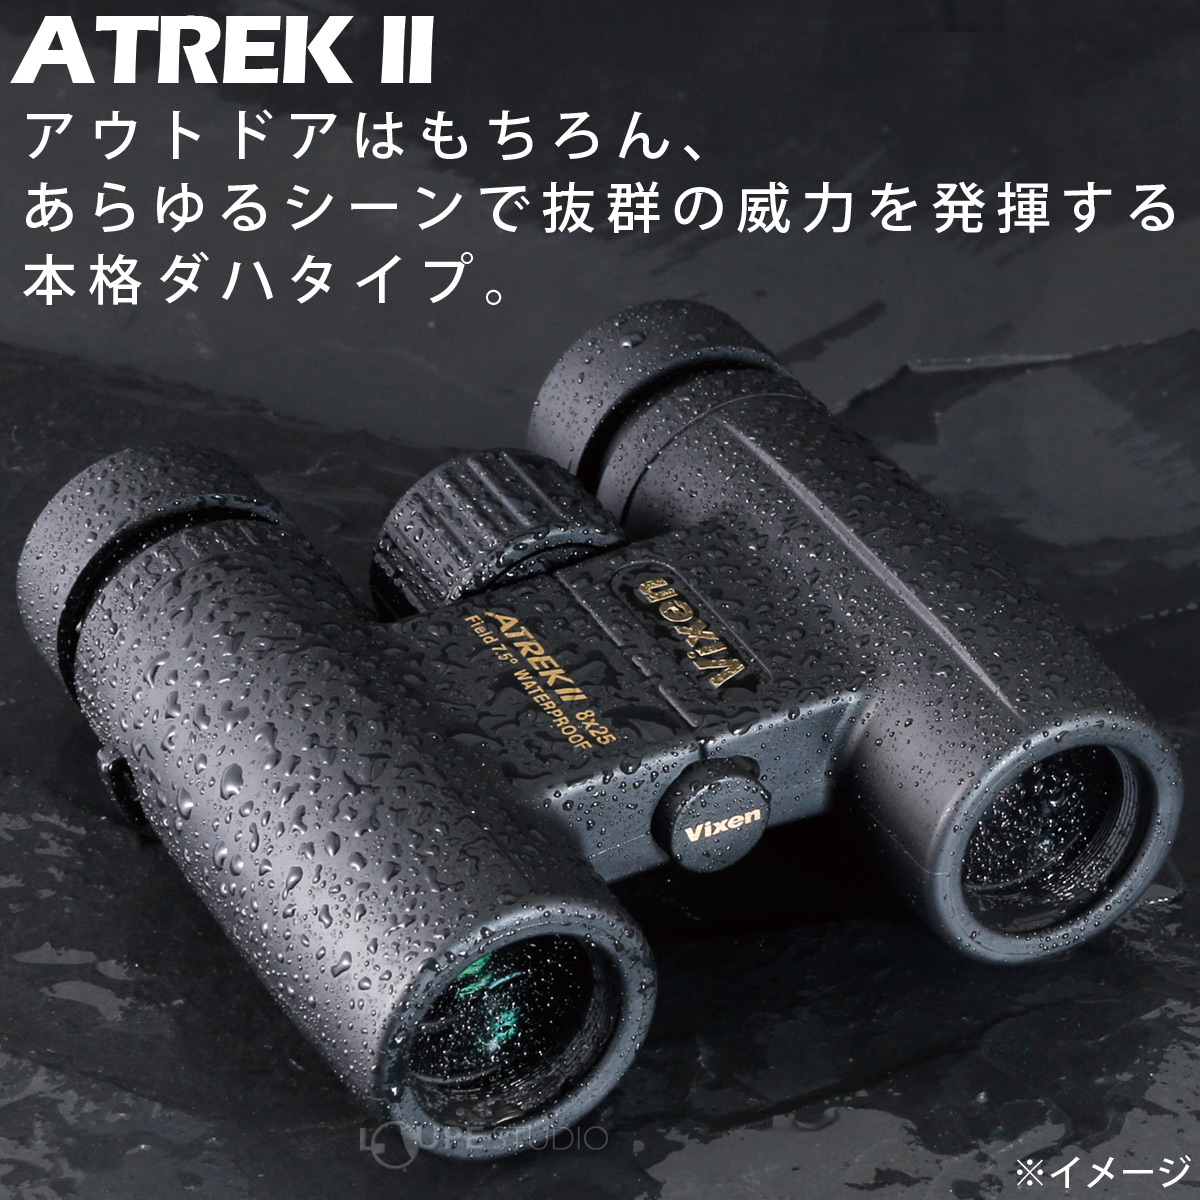 ビクセン 双眼鏡 8倍 25mm アトレックII HR8x25WP 防水 オペラグラス